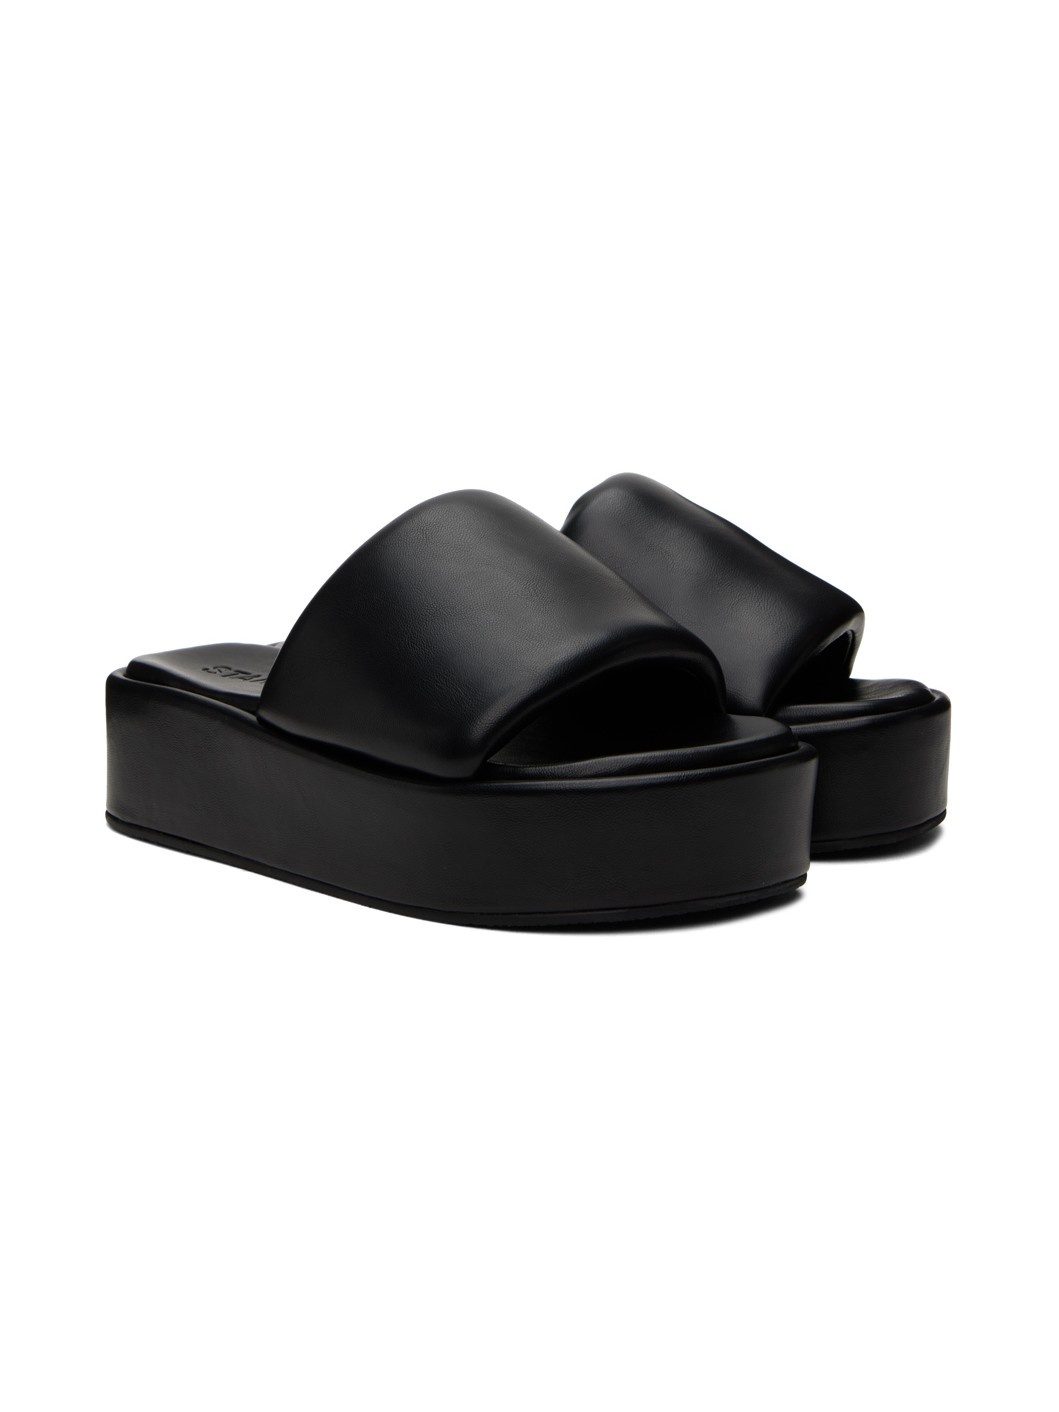 Black Phoebe Flatform Sandals - 4